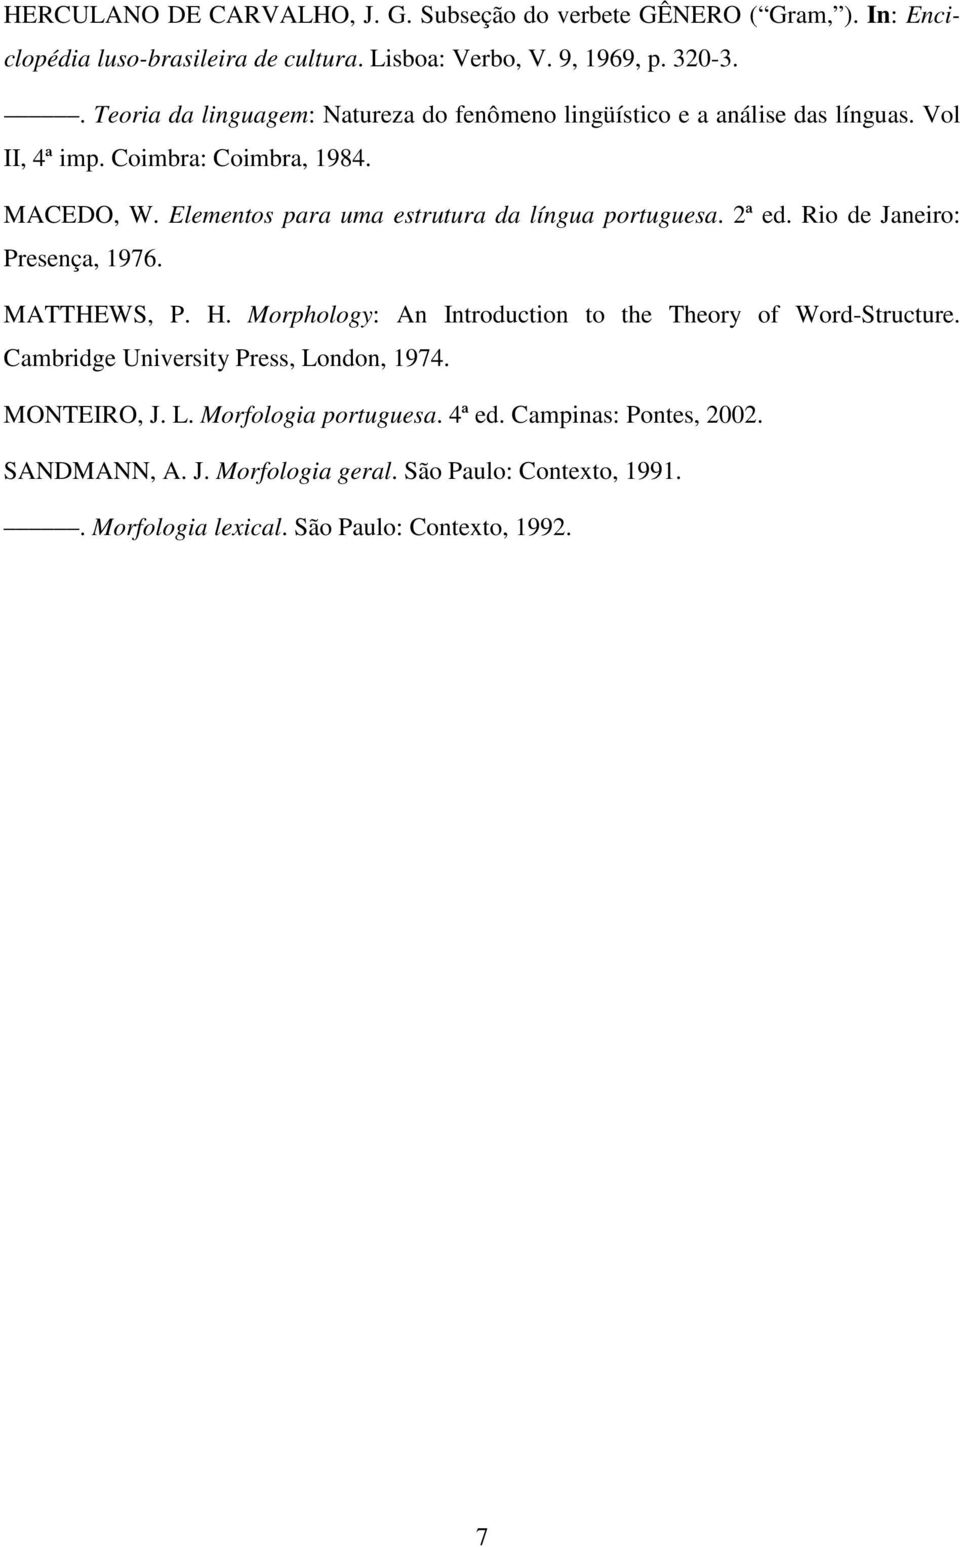 Elementos para uma estrutura da língua portuguesa. 2ª ed. Rio de Janeiro: Presença, 1976. MATTHEWS, P. H. Morphology: An Introduction to the Theory of Word-Structure.